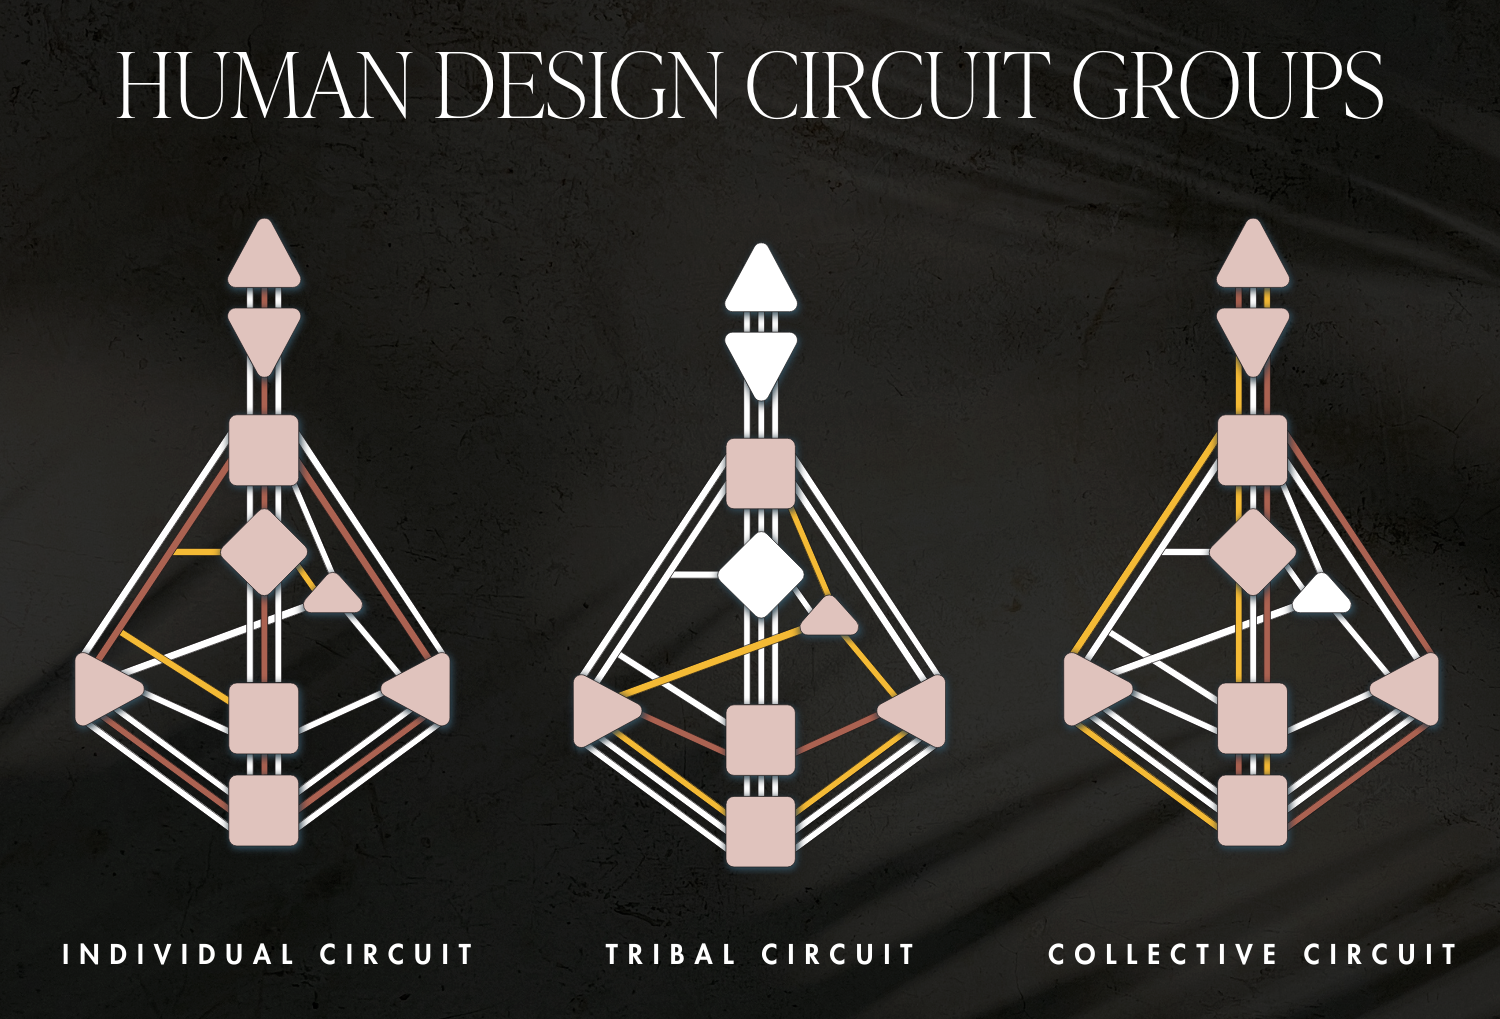 Human Design circuit groups